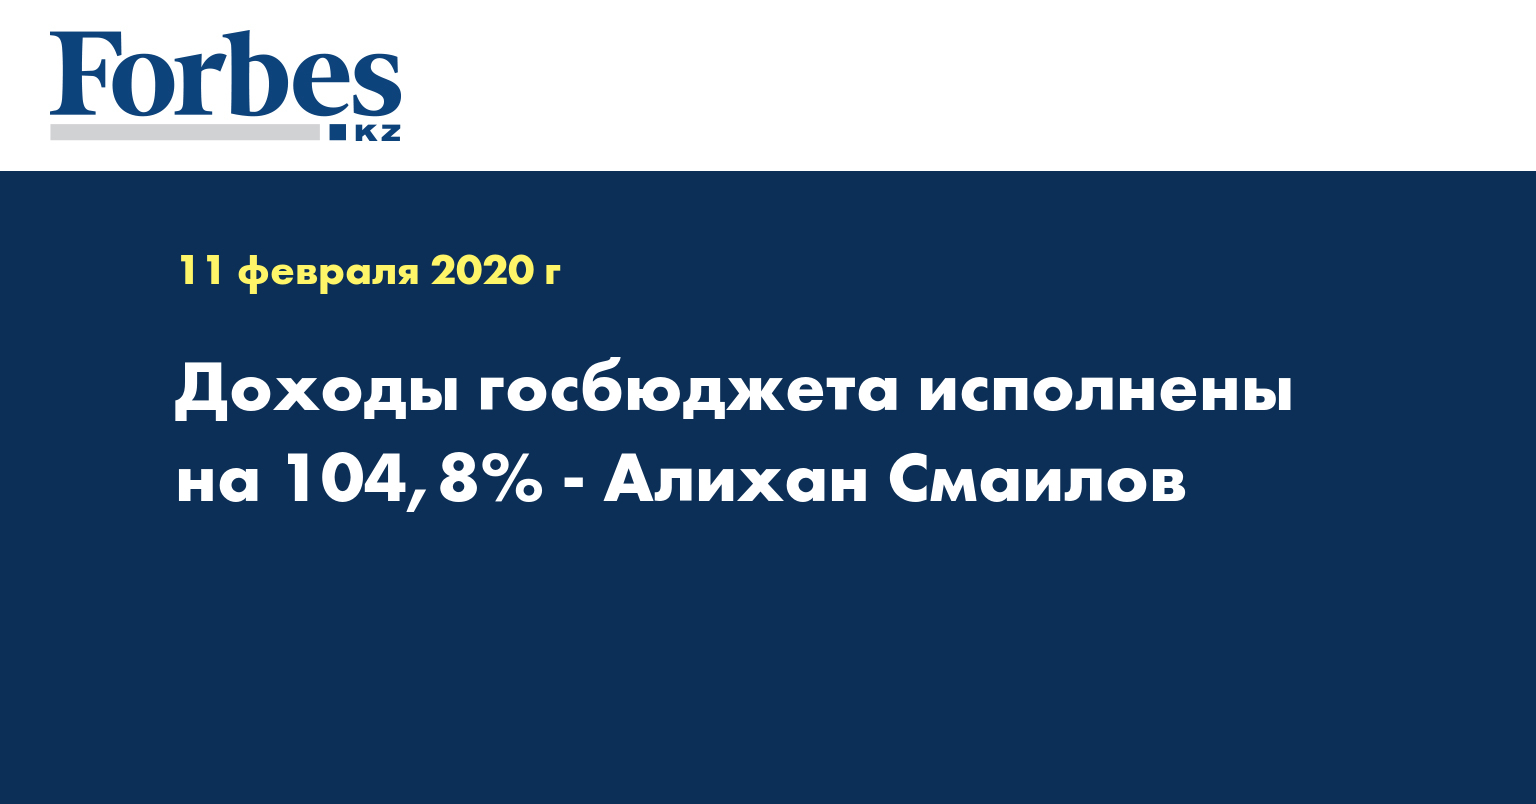 Доходы госбюджета исполнены на 104,8% - Алихан Смаилов